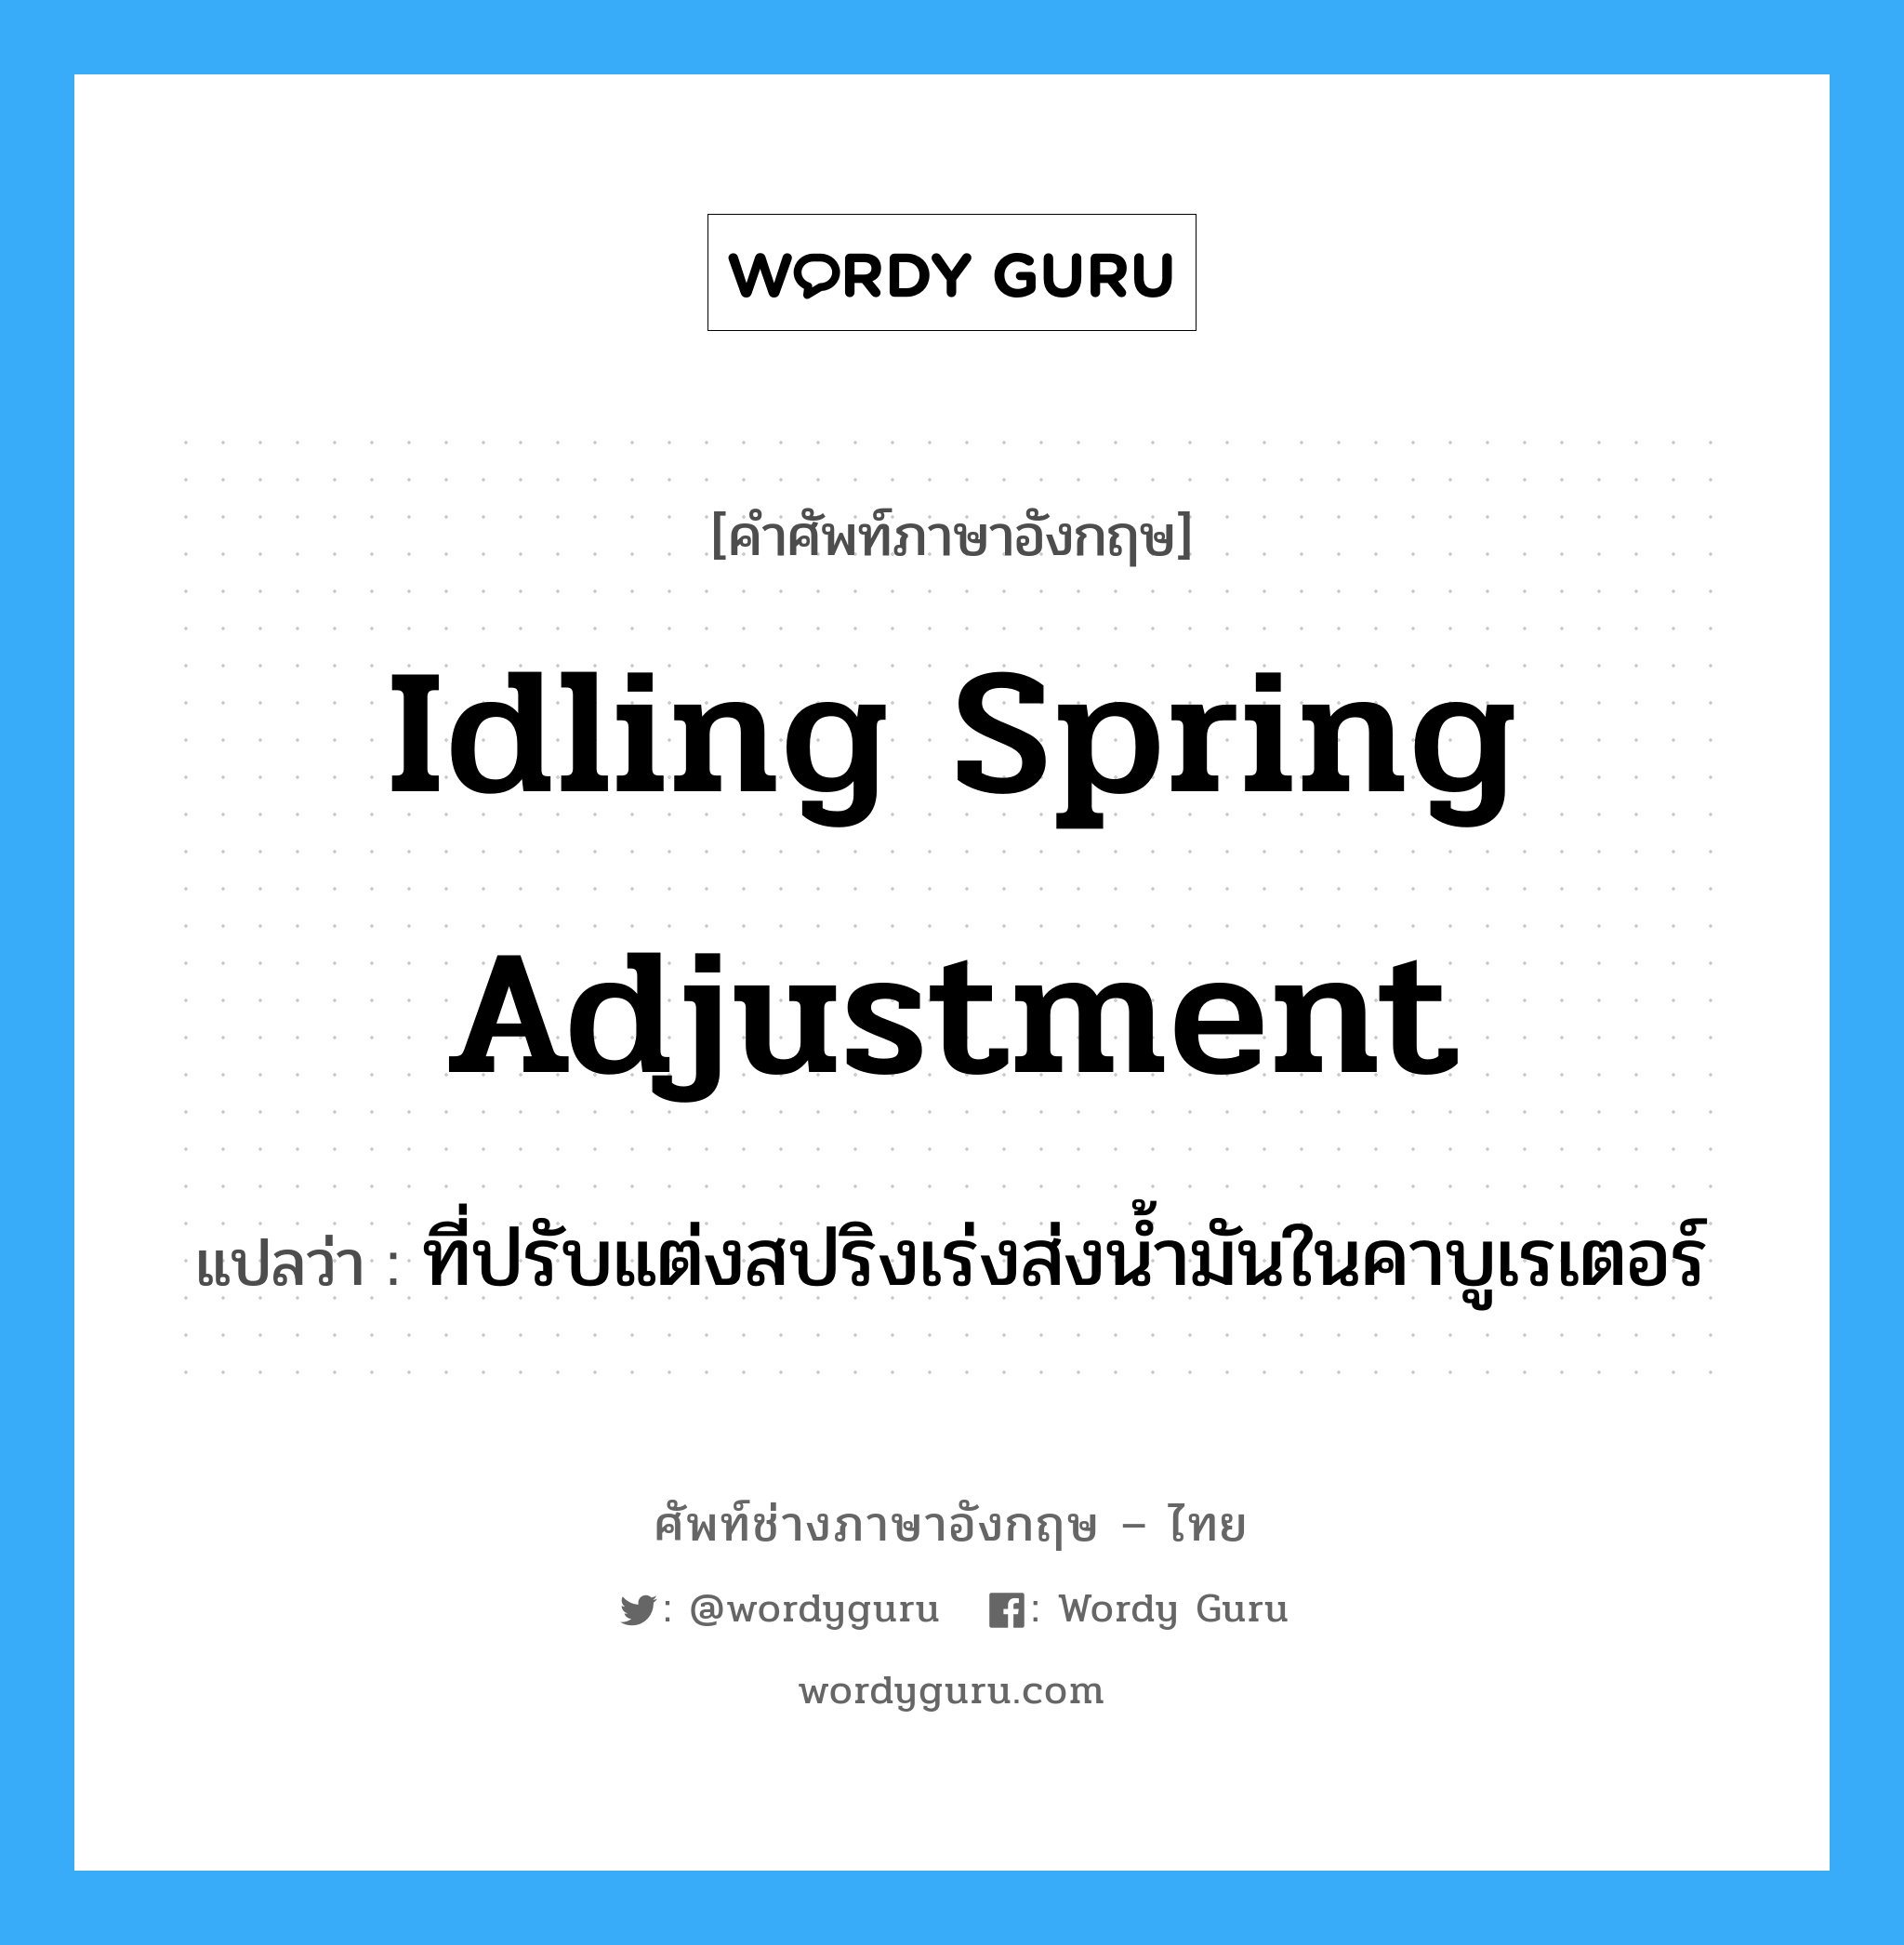 idling spring adjustment แปลว่า?, คำศัพท์ช่างภาษาอังกฤษ - ไทย idling spring adjustment คำศัพท์ภาษาอังกฤษ idling spring adjustment แปลว่า ที่ปรับแต่งสปริงเร่งส่งน้ำมันในคาบูเรเตอร์